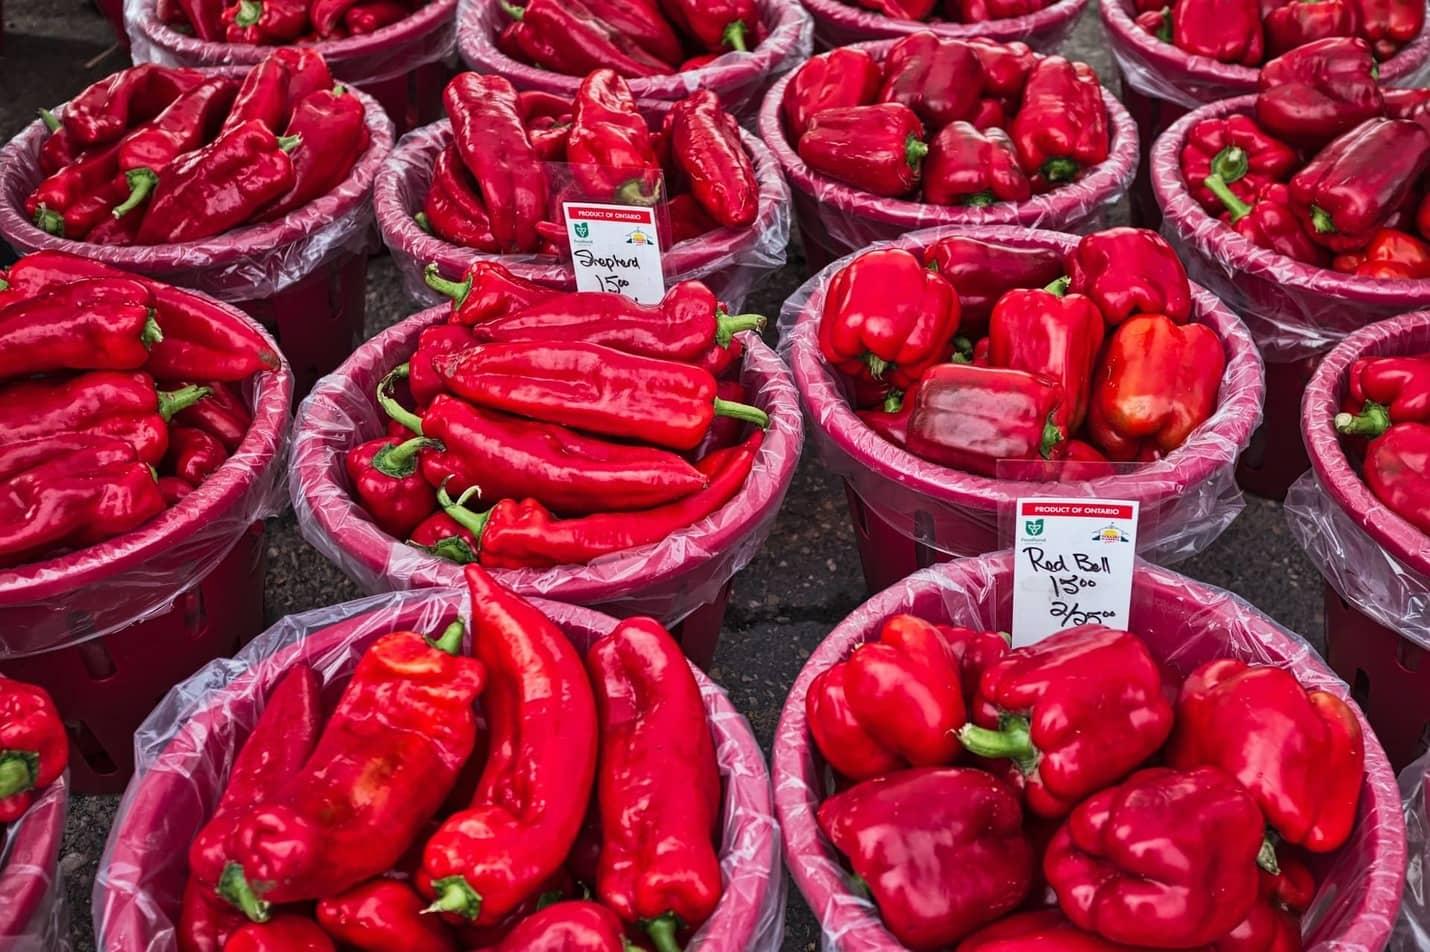 Kje lahko kupim rdečo papriko?